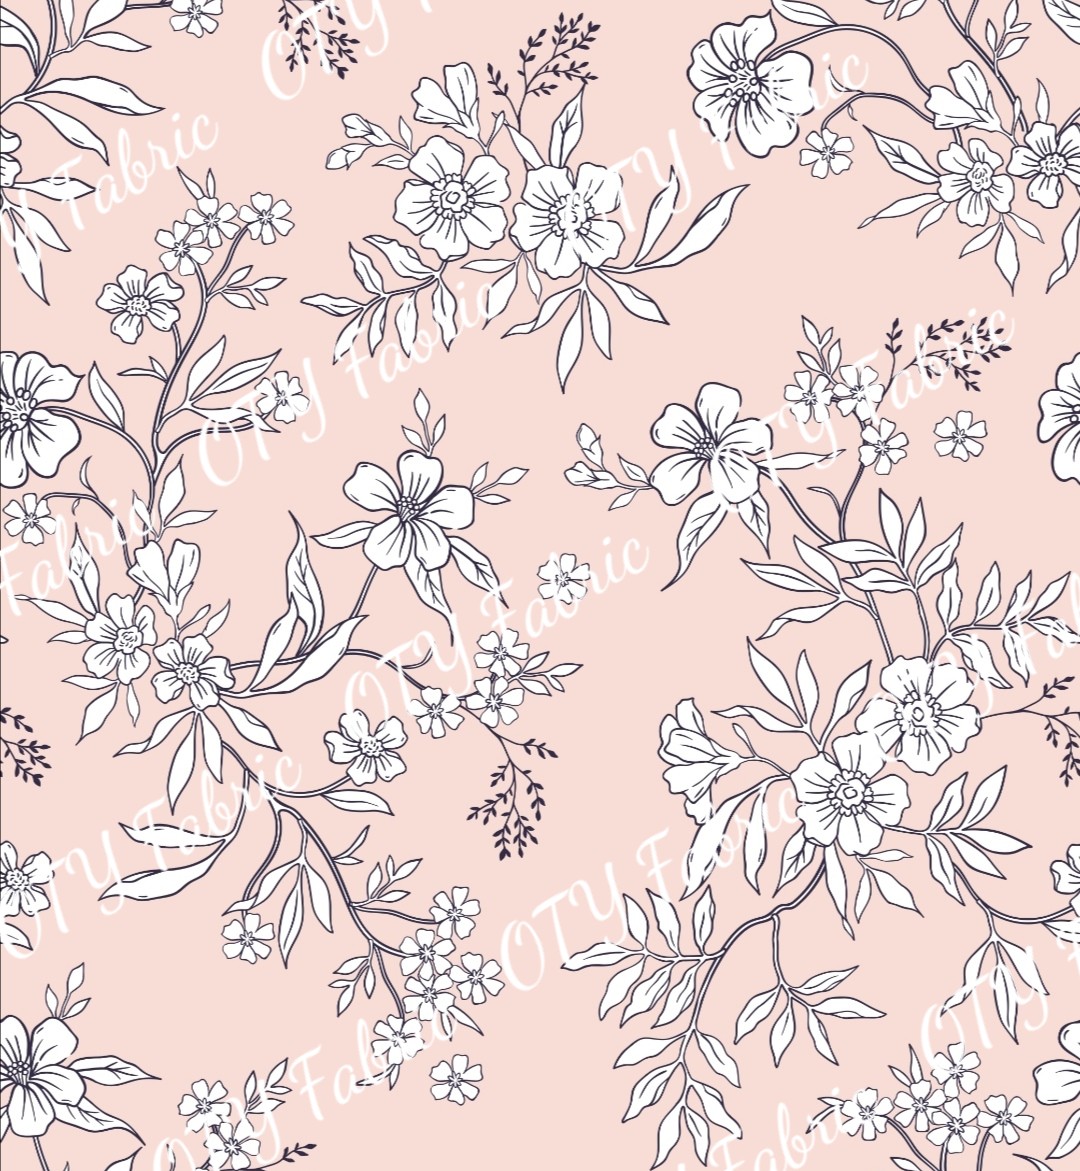 Dusky pink sketch floral